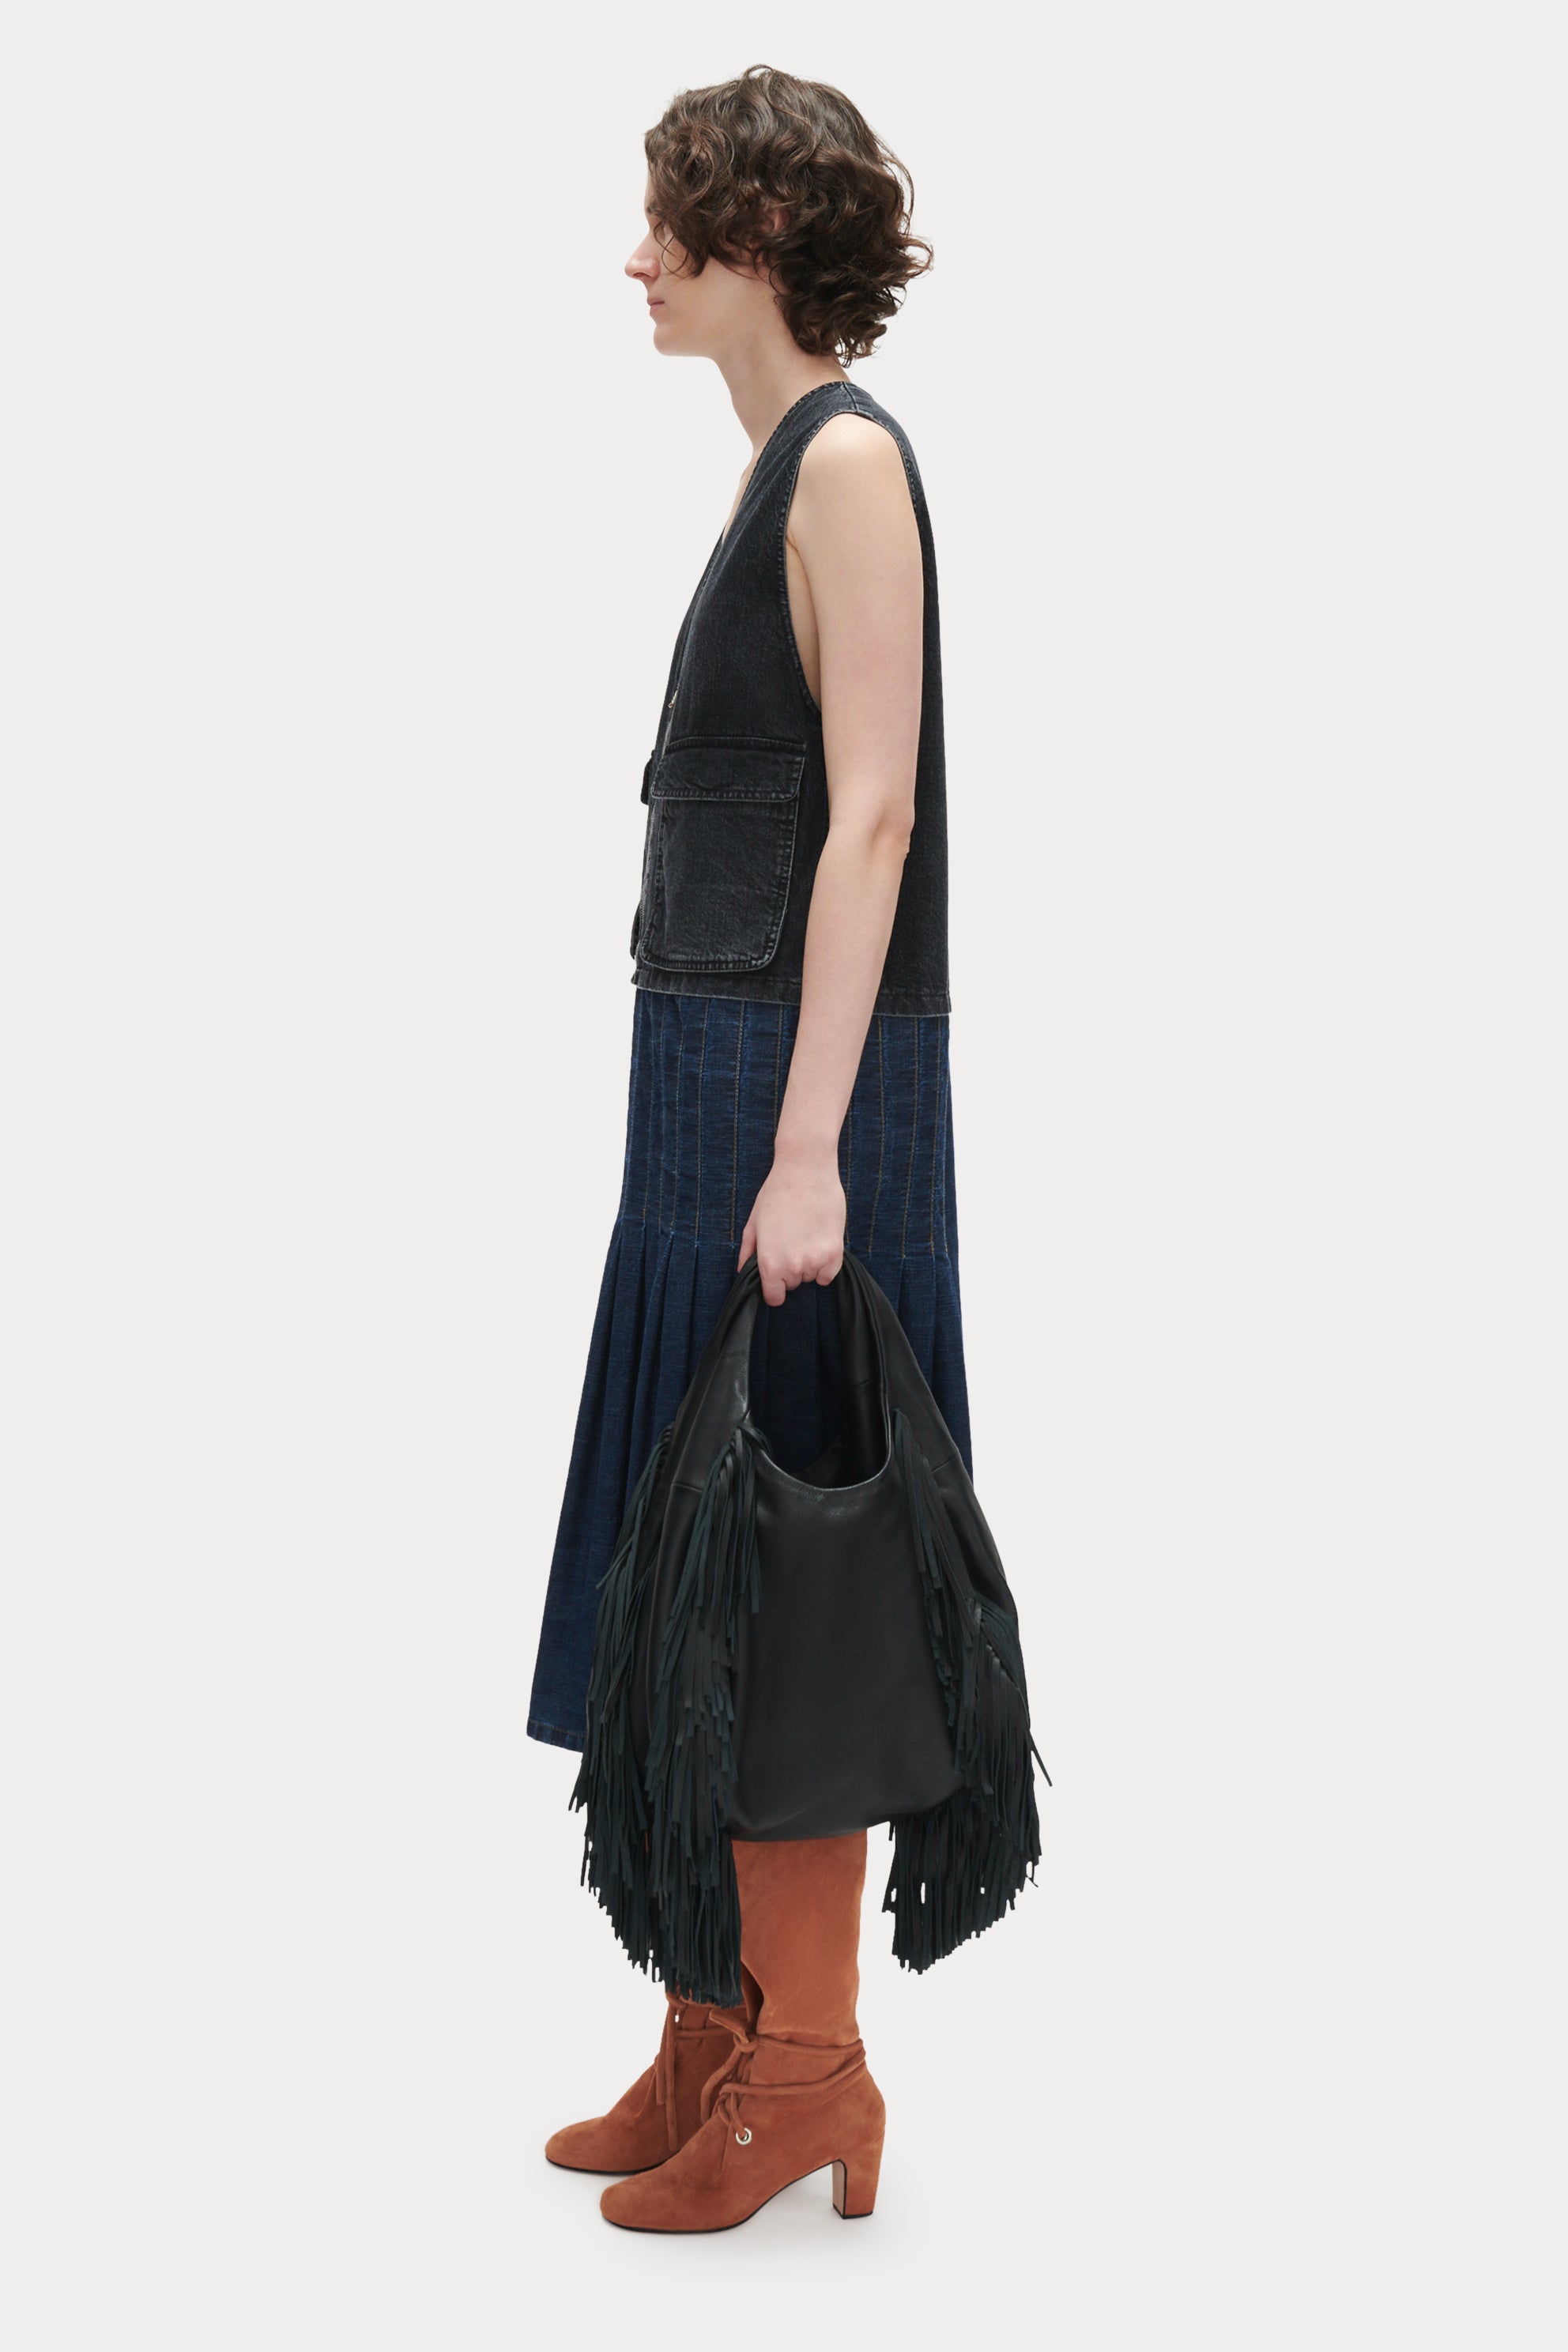 Cool Black Purse - Black Handbag - Fringe Purse - $30.00 - Lulus